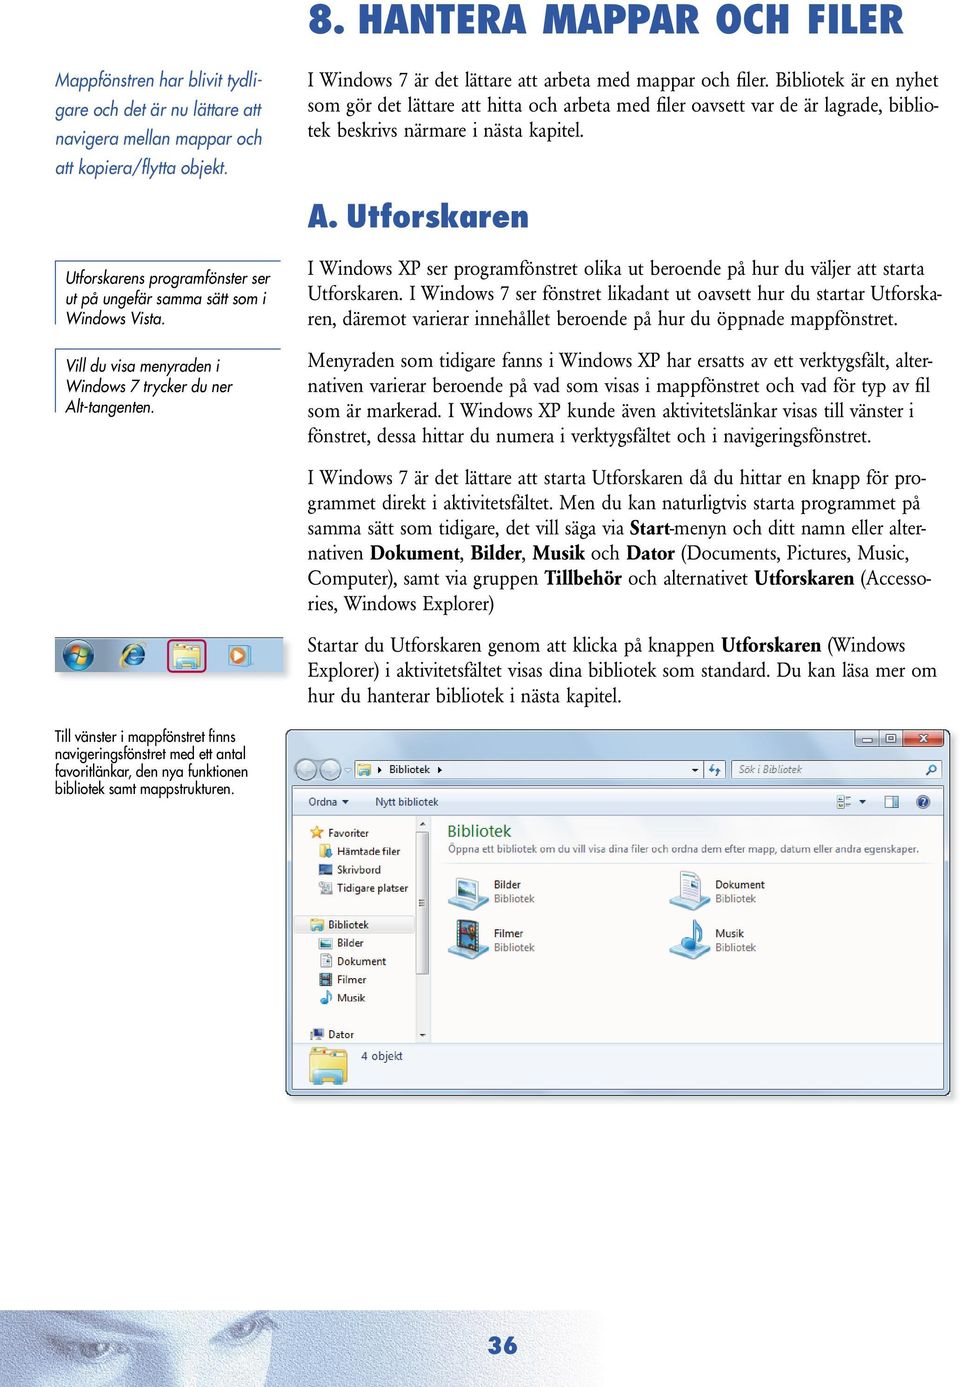 Bibliotek är en nyhet som gör det lättare att hitta och arbeta med fi ler oavsett var de är lagrade, bibliotek beskrivs närmare i nästa kapitel. a. utforskaren Utforskarens programfönster ser ut på ungefär samma sätt som i Windows Vista.